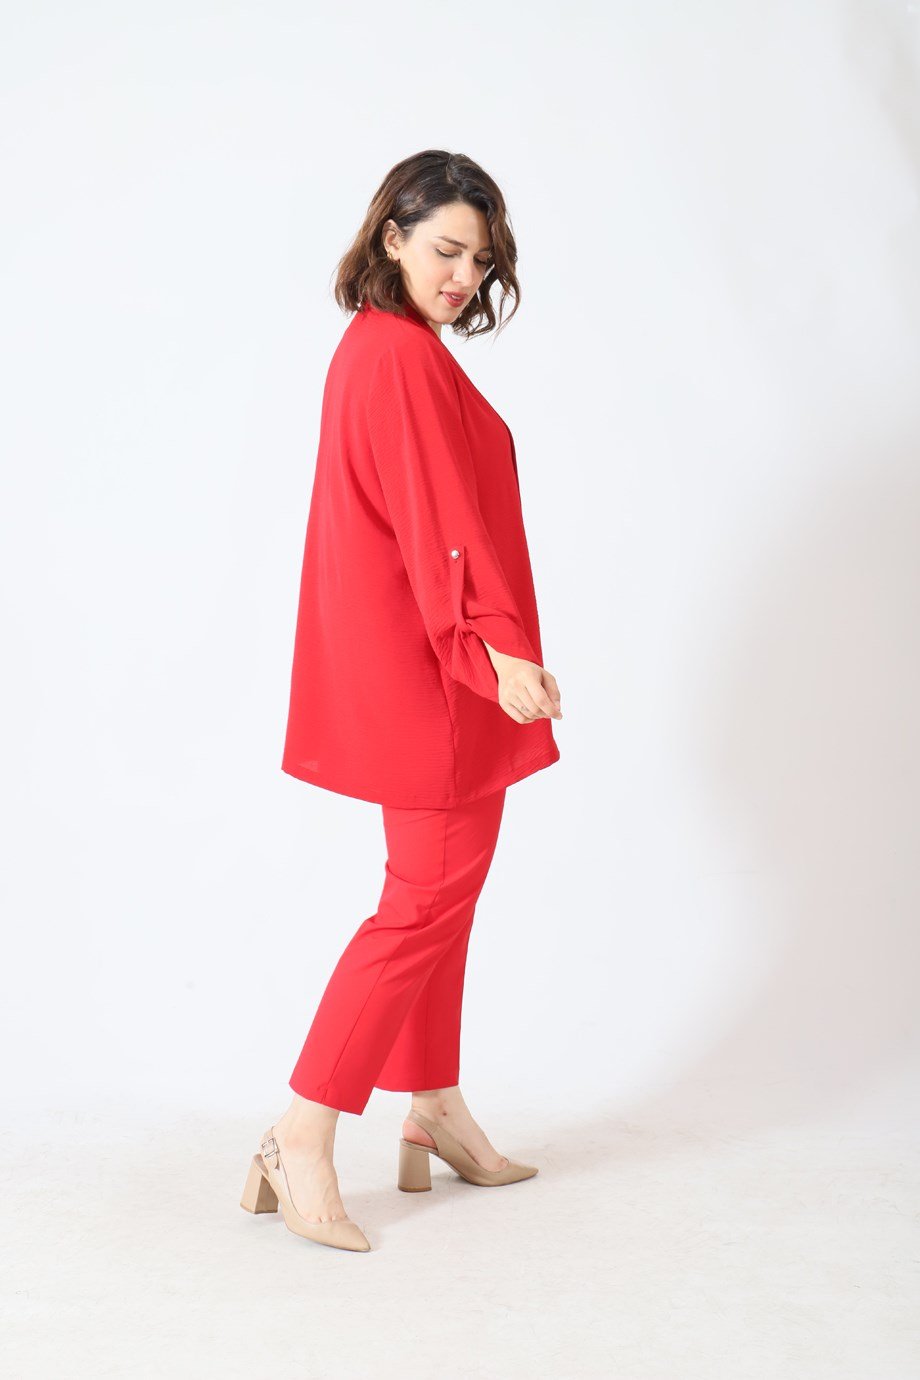 Büyük Beden Arya İkili Takım Kırmızı | büyük beden bayan takım elbise  modelleri | Bedrinxxl | Büyük Beden İkili Takımlar